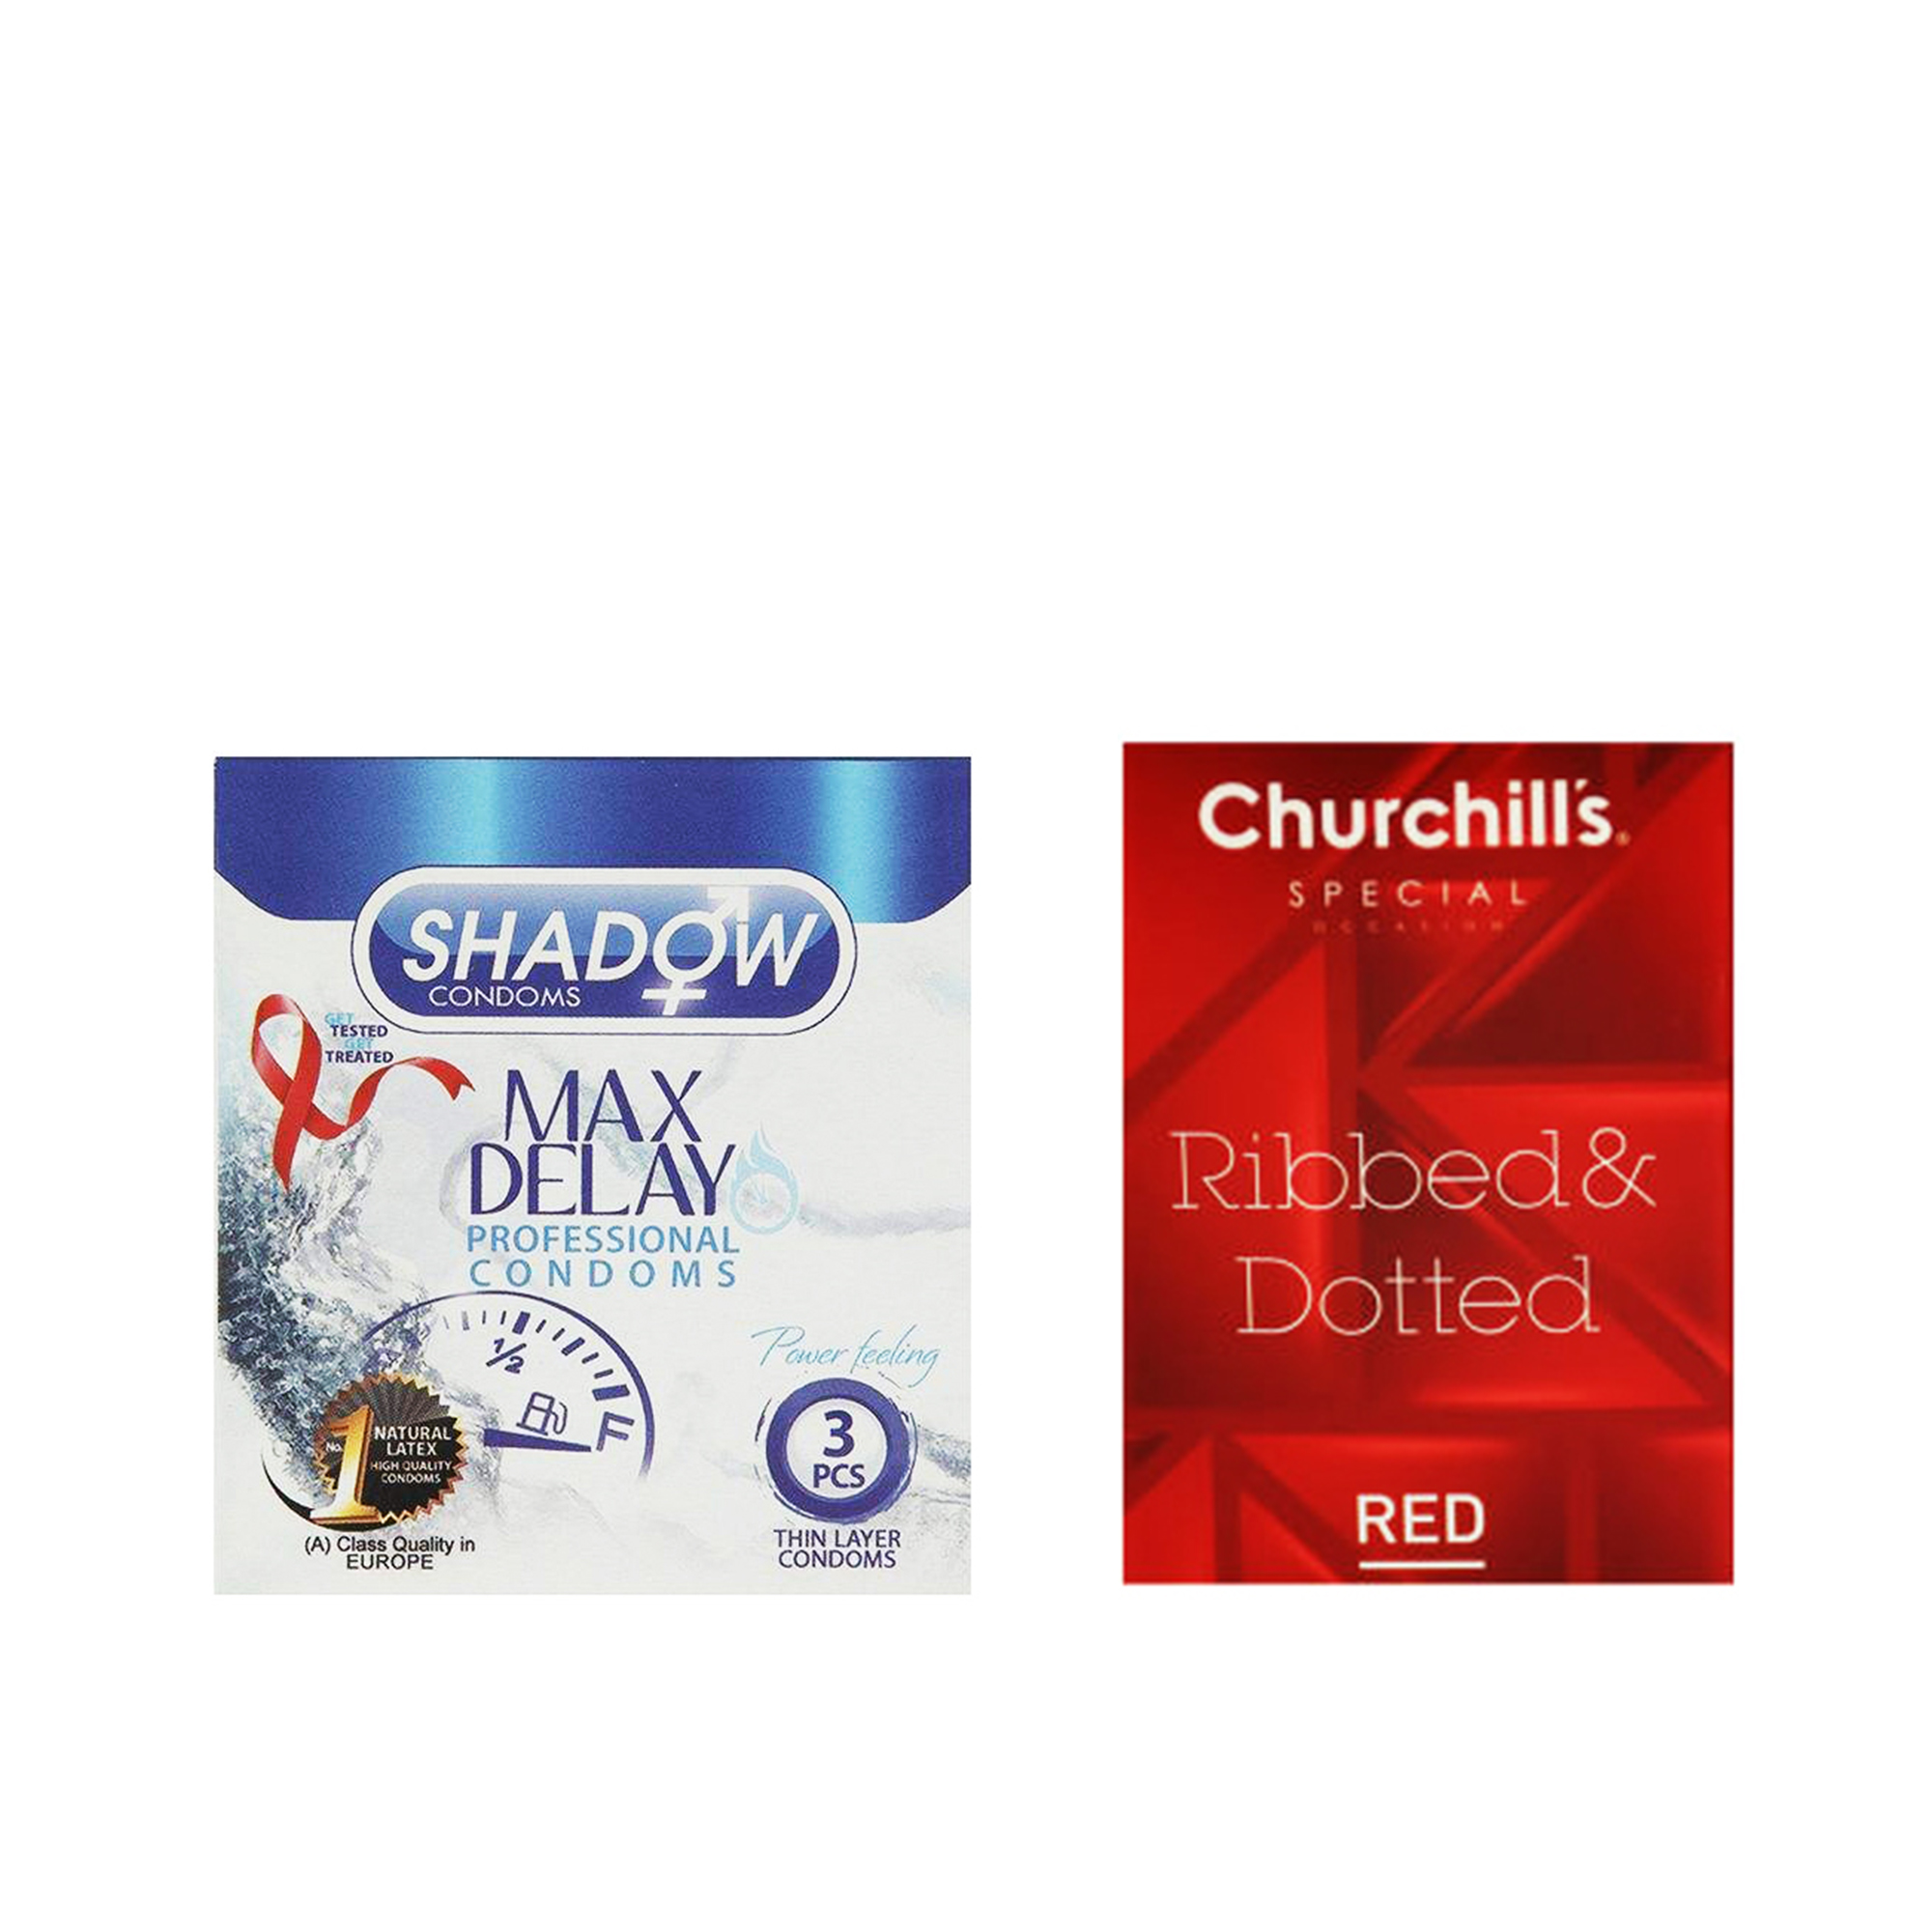 کاندوم شادو مدل Max Delay بسته 3 عددی به همراه کاندوم چرچیلز مدل Hot Gel بسته 3 عددی